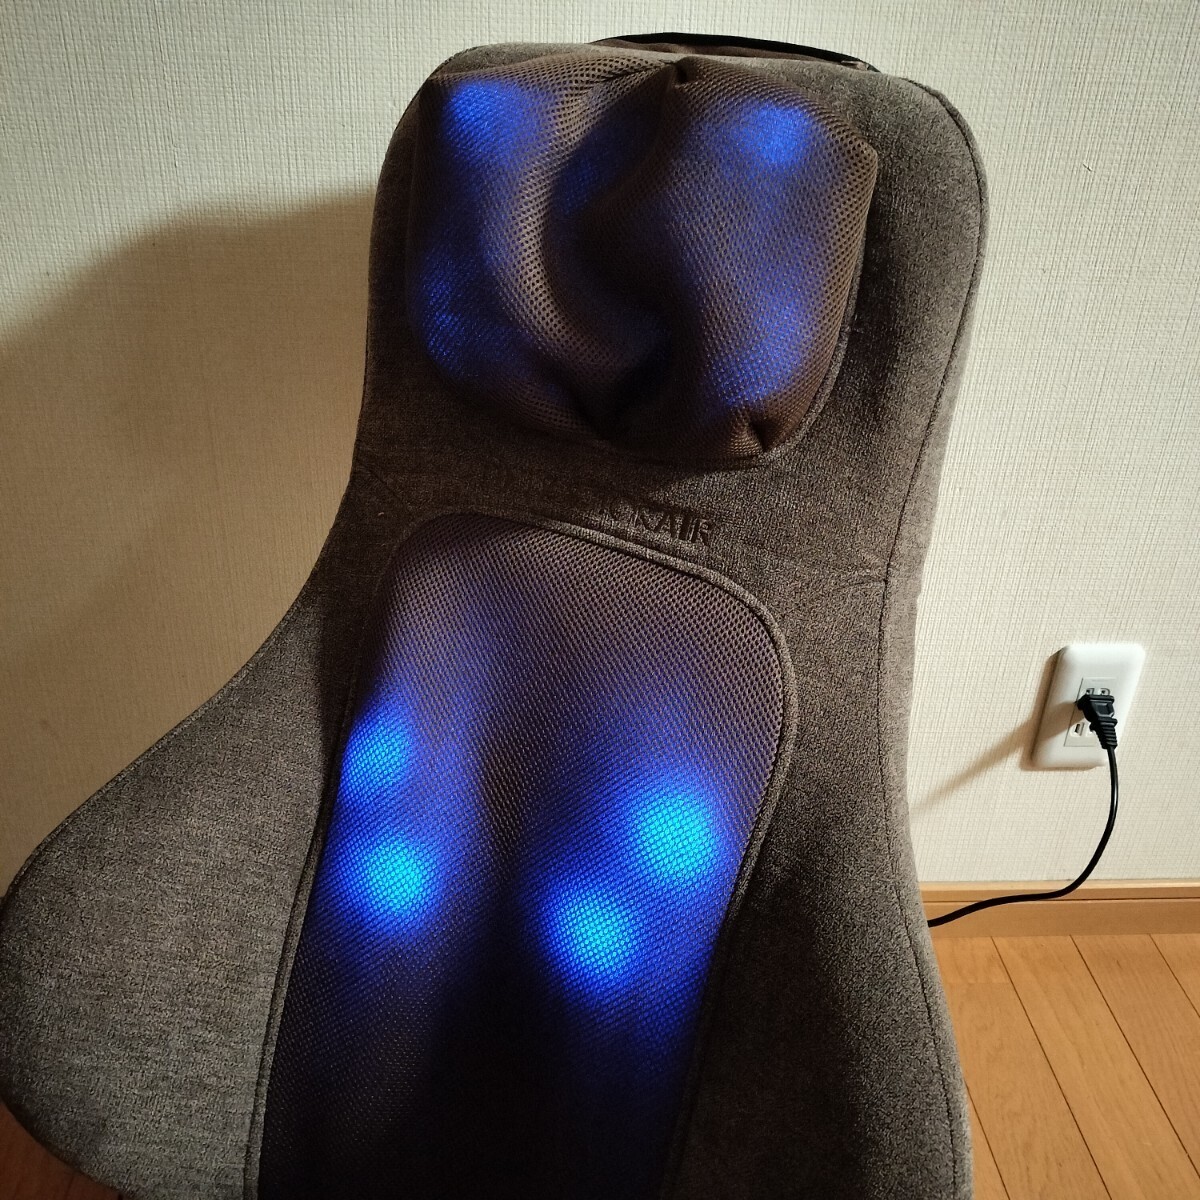 ドクターエア 3D マッサージシート 座椅子 MS-05 ブラウン/リクライニング 首 肩 背中 腰 (マッサージチェア マッサージ機)